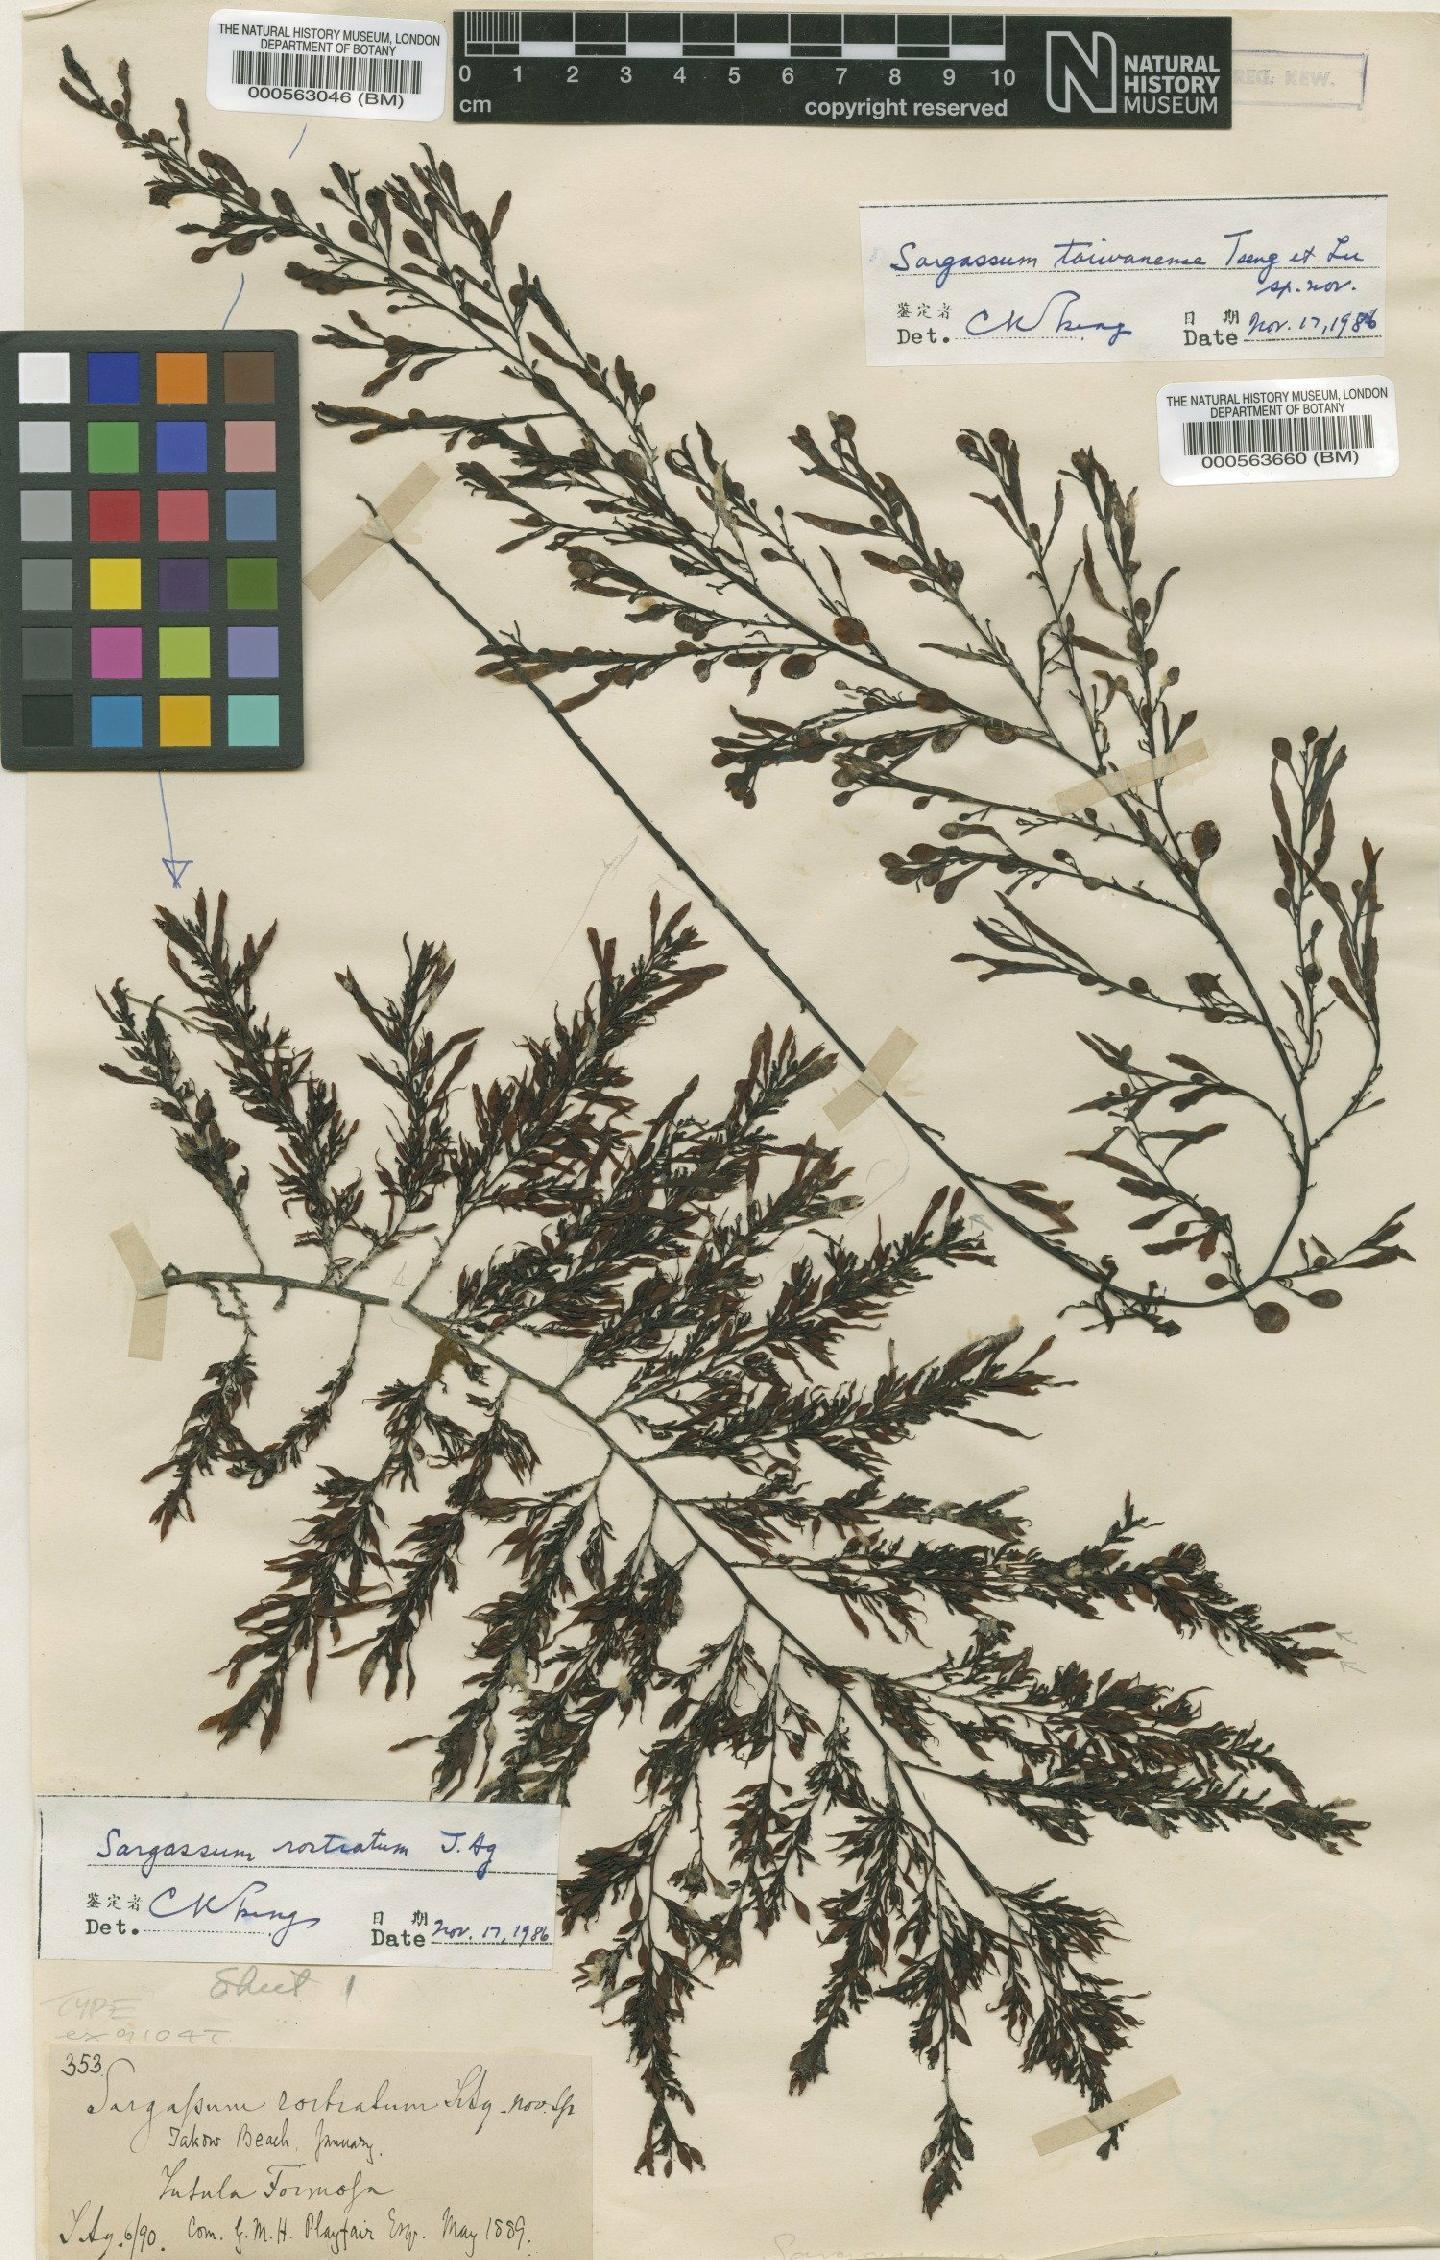 To NHMUK collection (Sargassum rostratum J.Agardh; Type; NHMUK:ecatalogue:4723318)